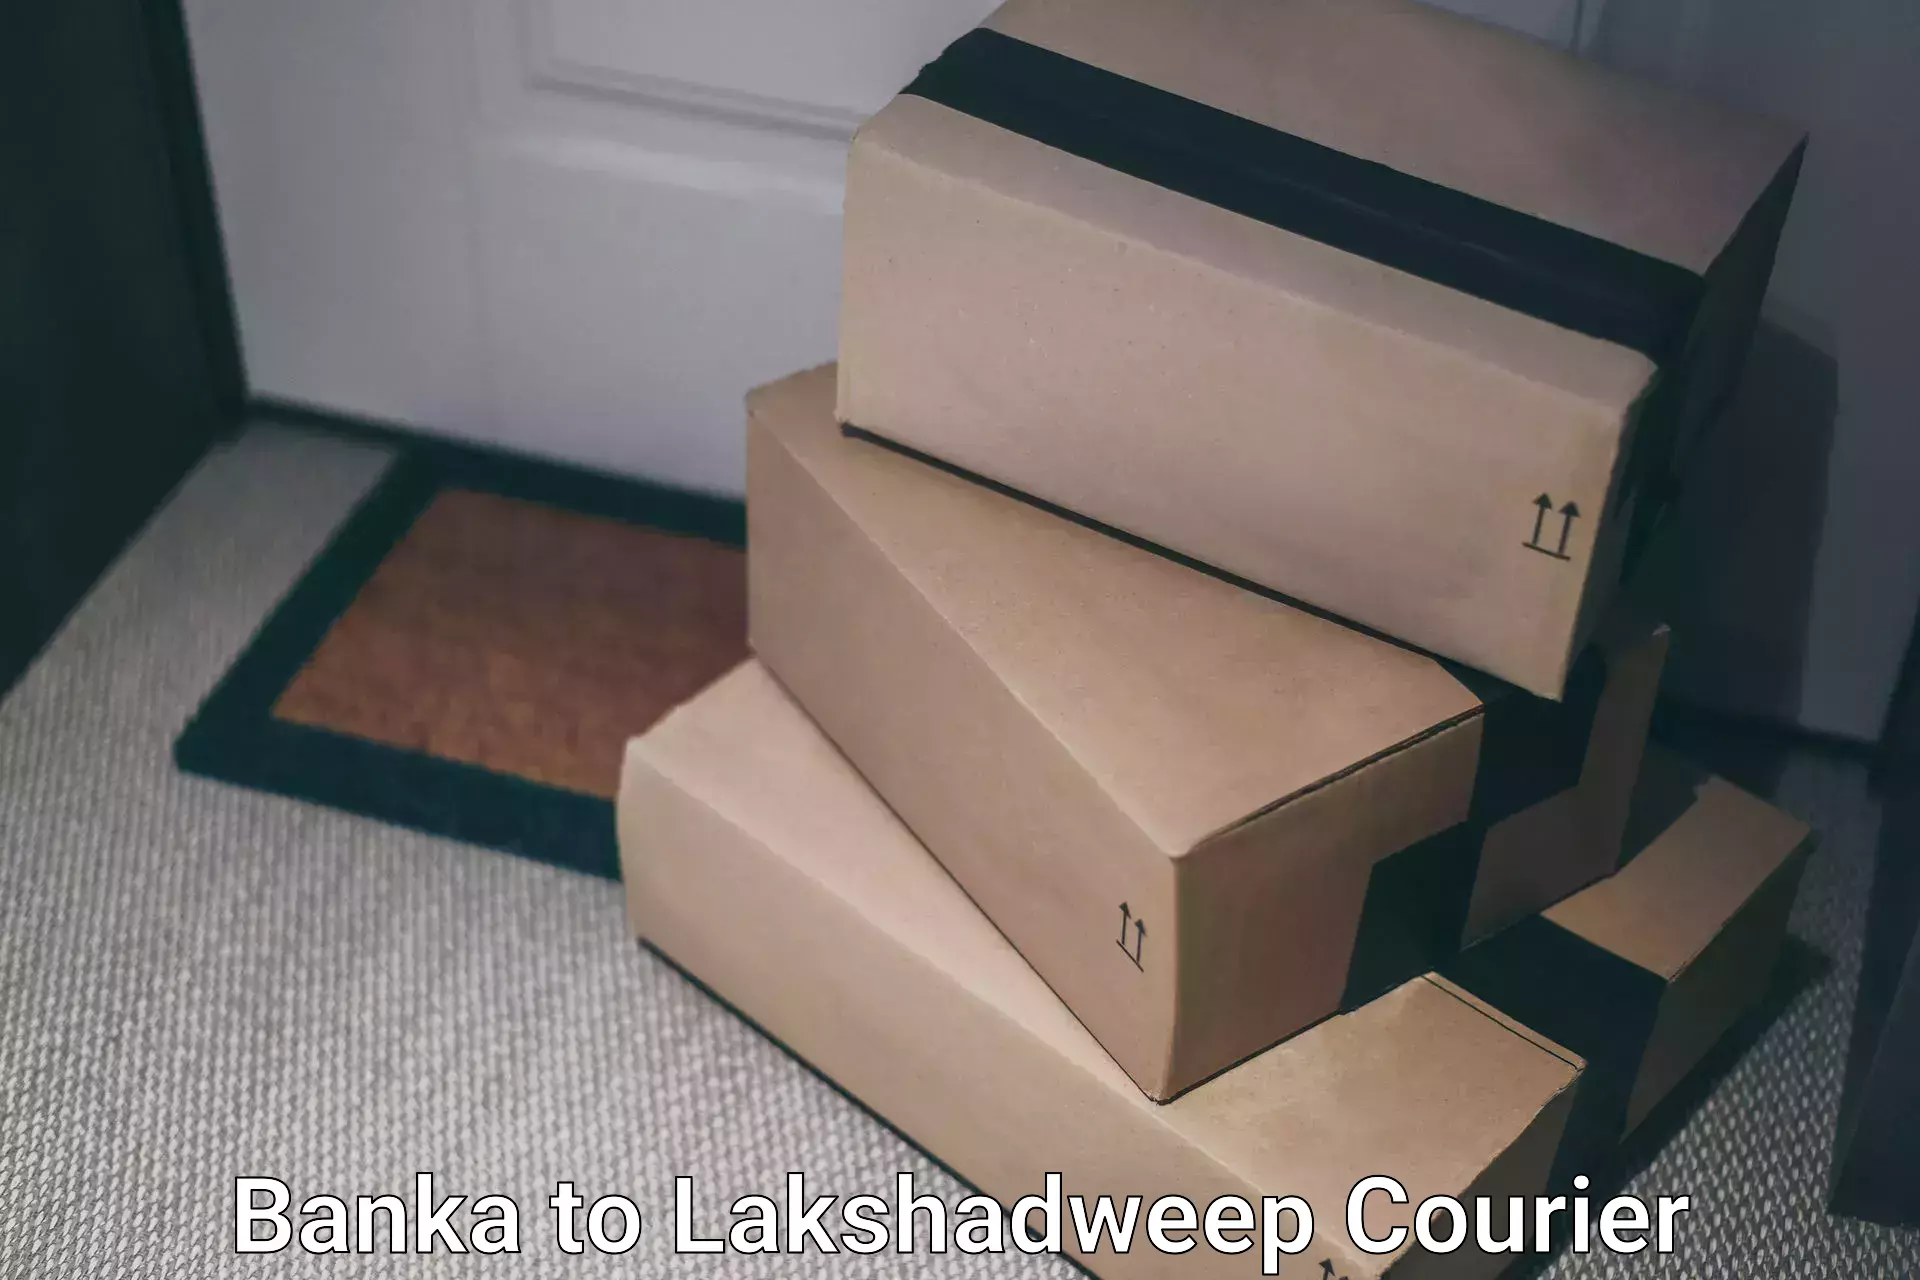 Seamless shipping service Banka to Lakshadweep